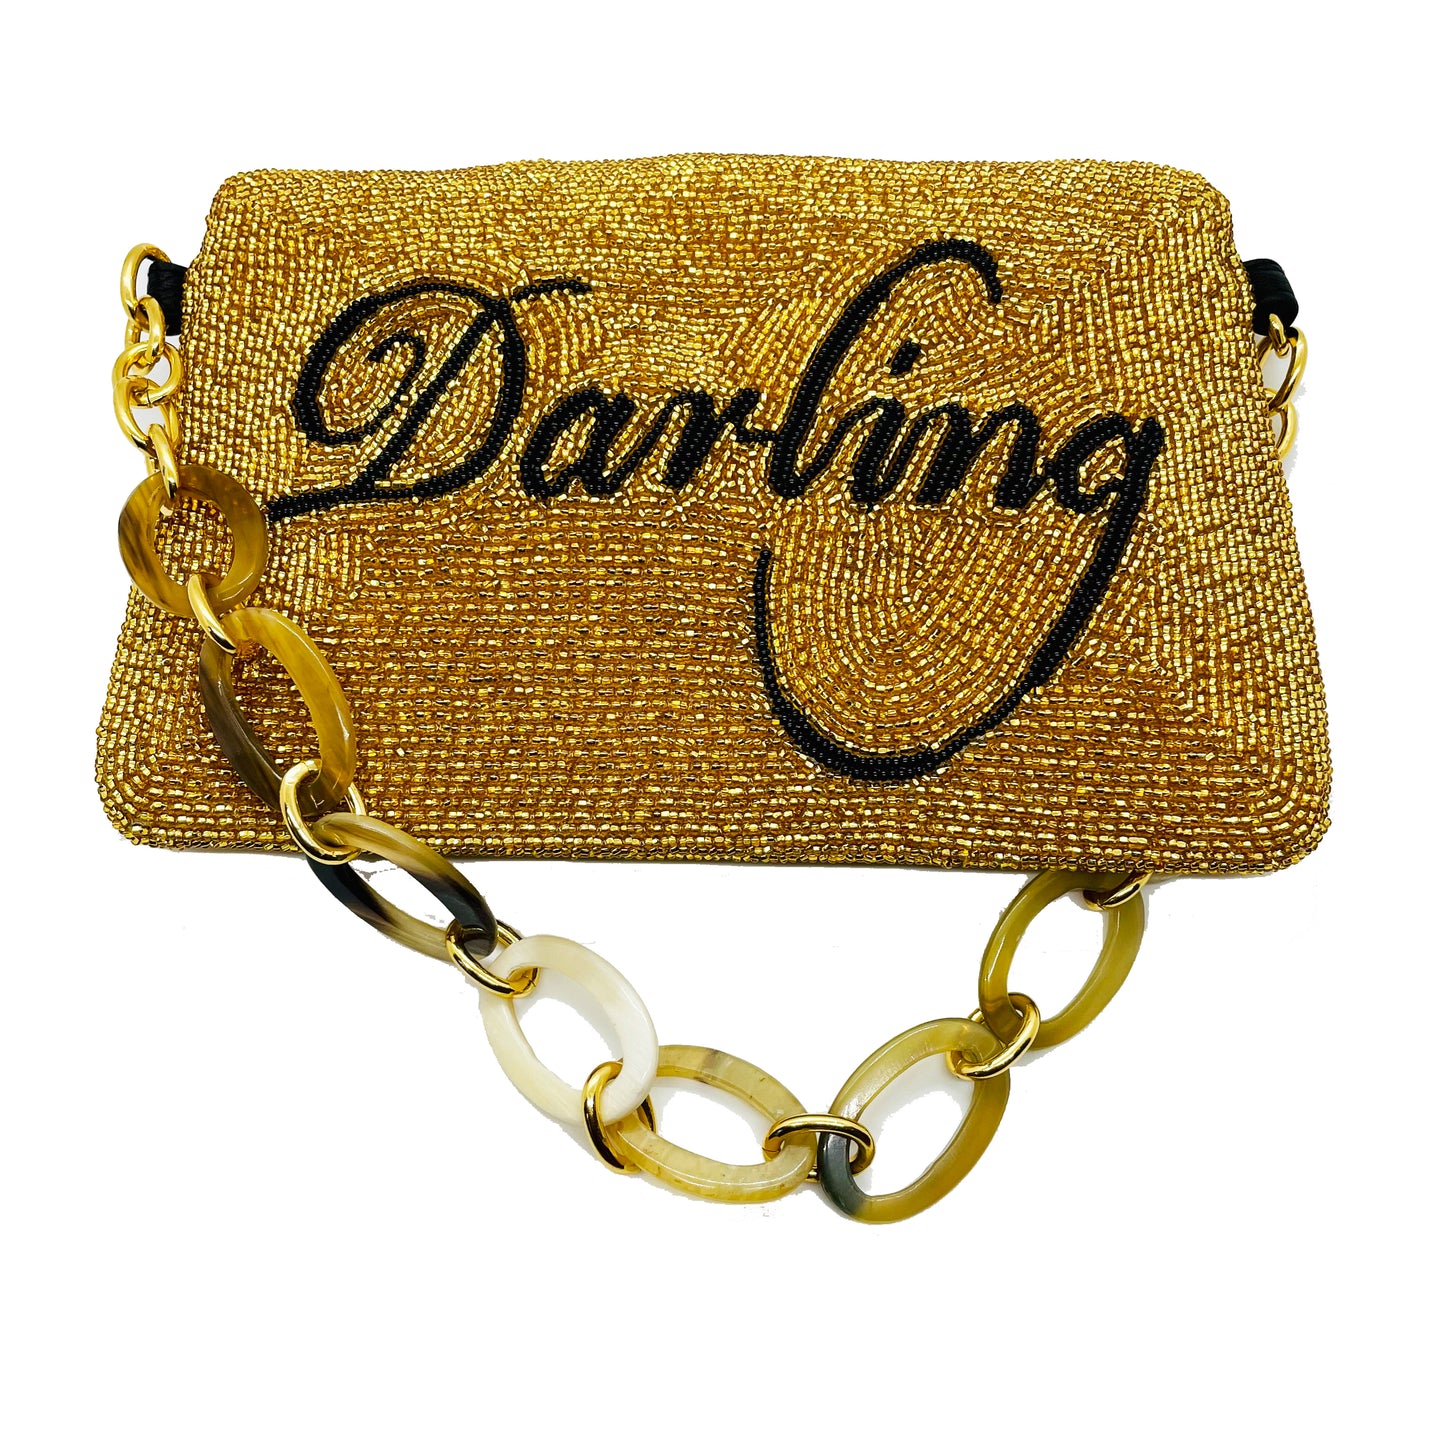 Beaded Darling Handbag